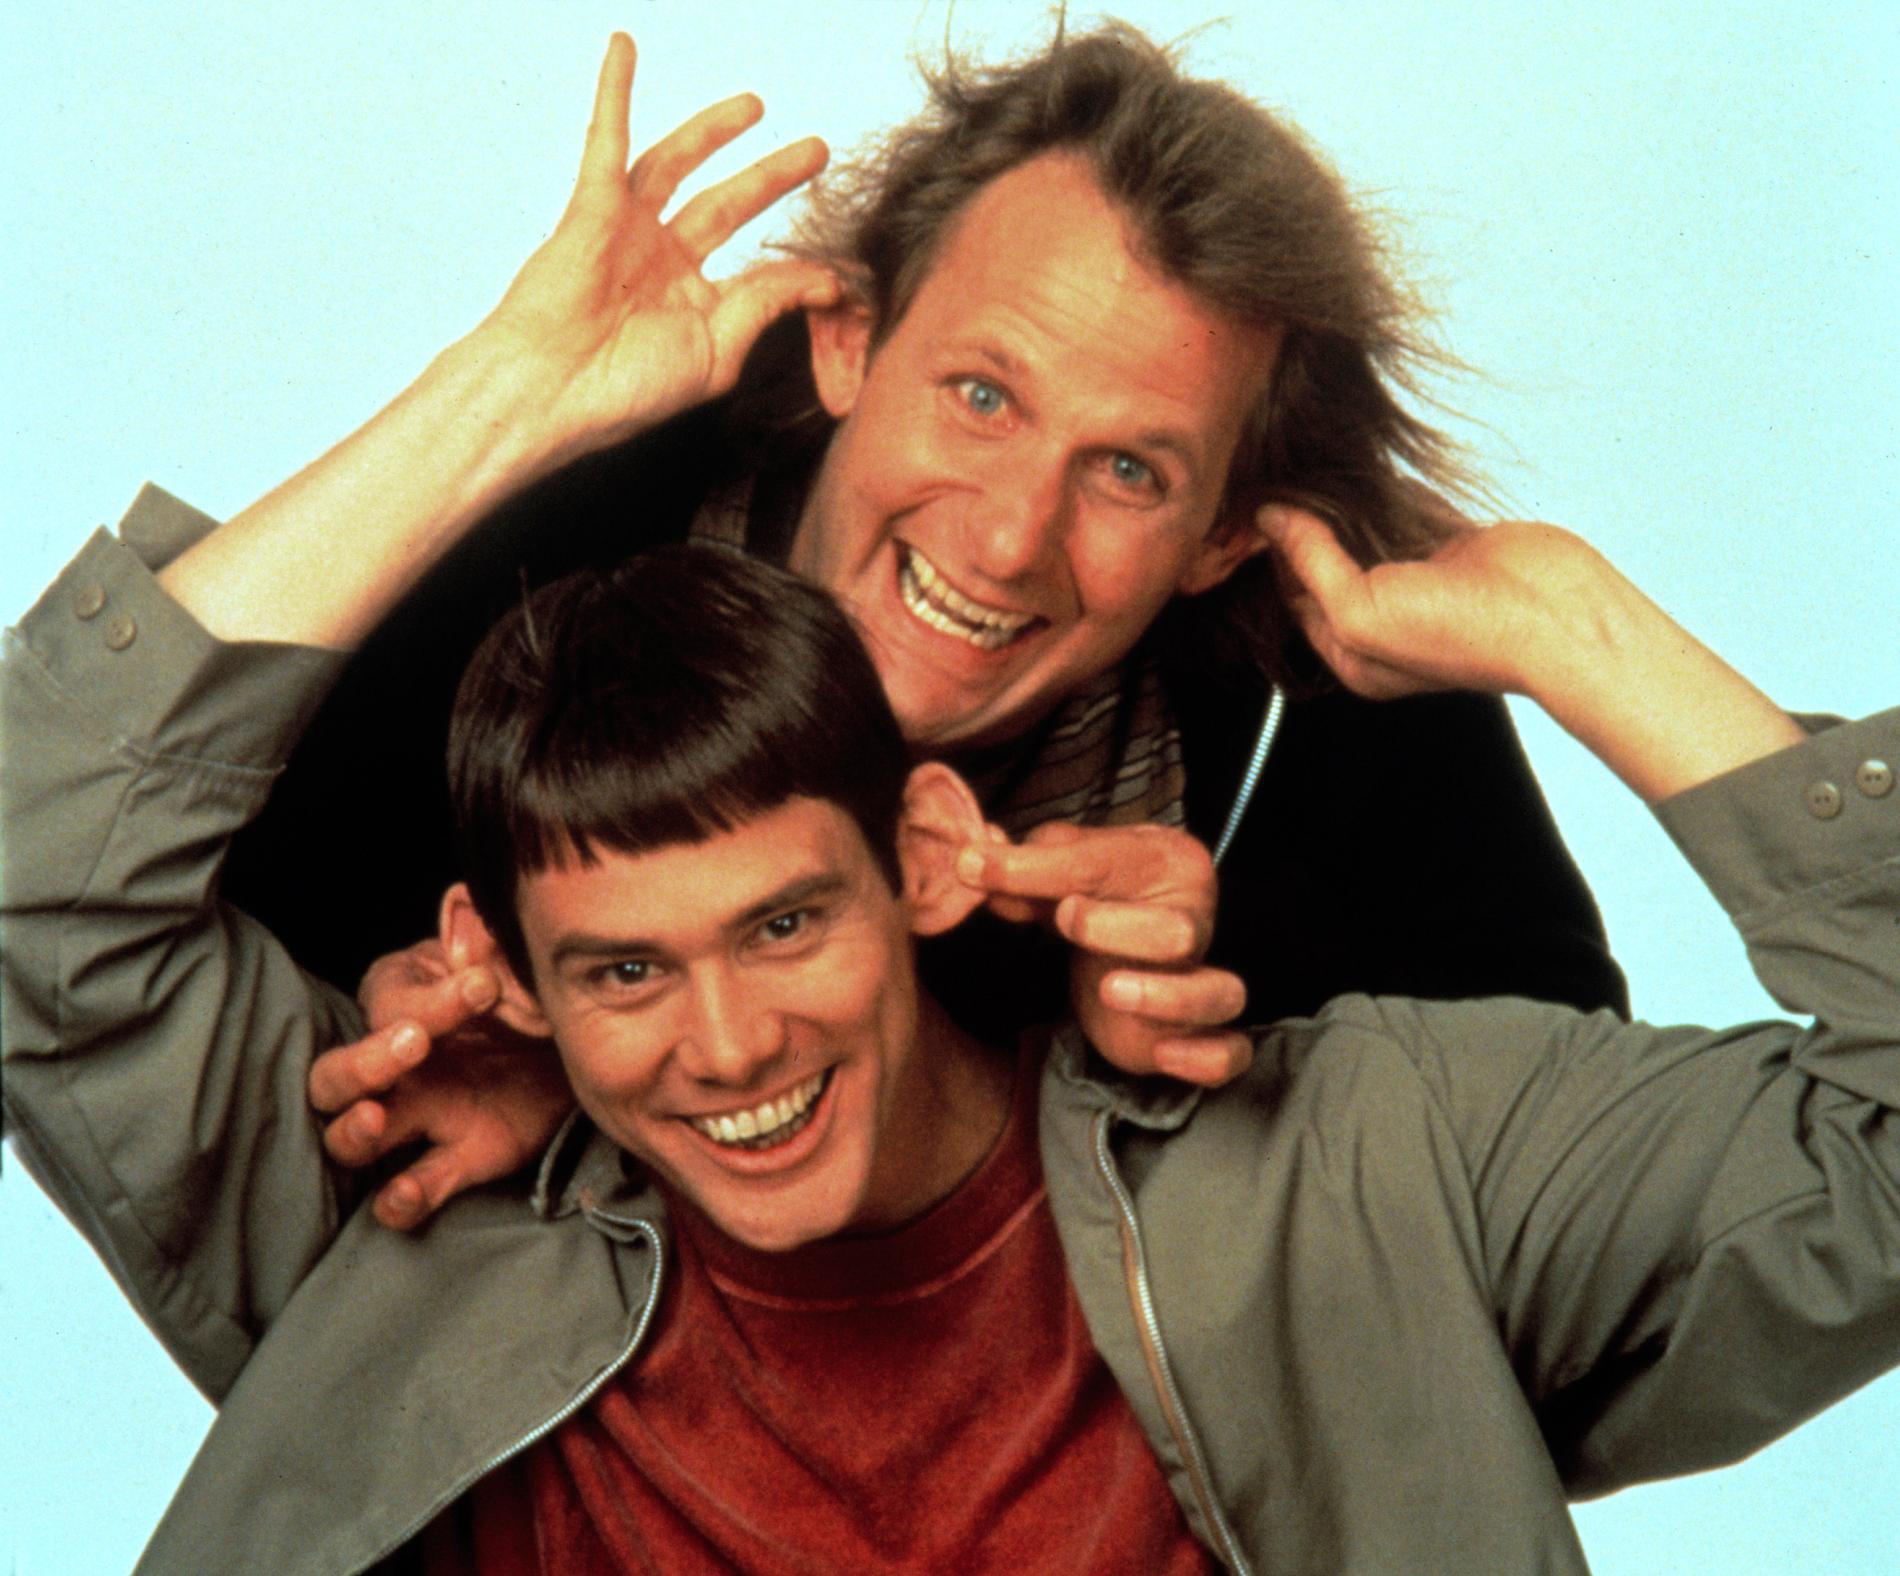 20 år sedan Jim Carreys Lloyd och Jeff Daniels Harry i första filmen.